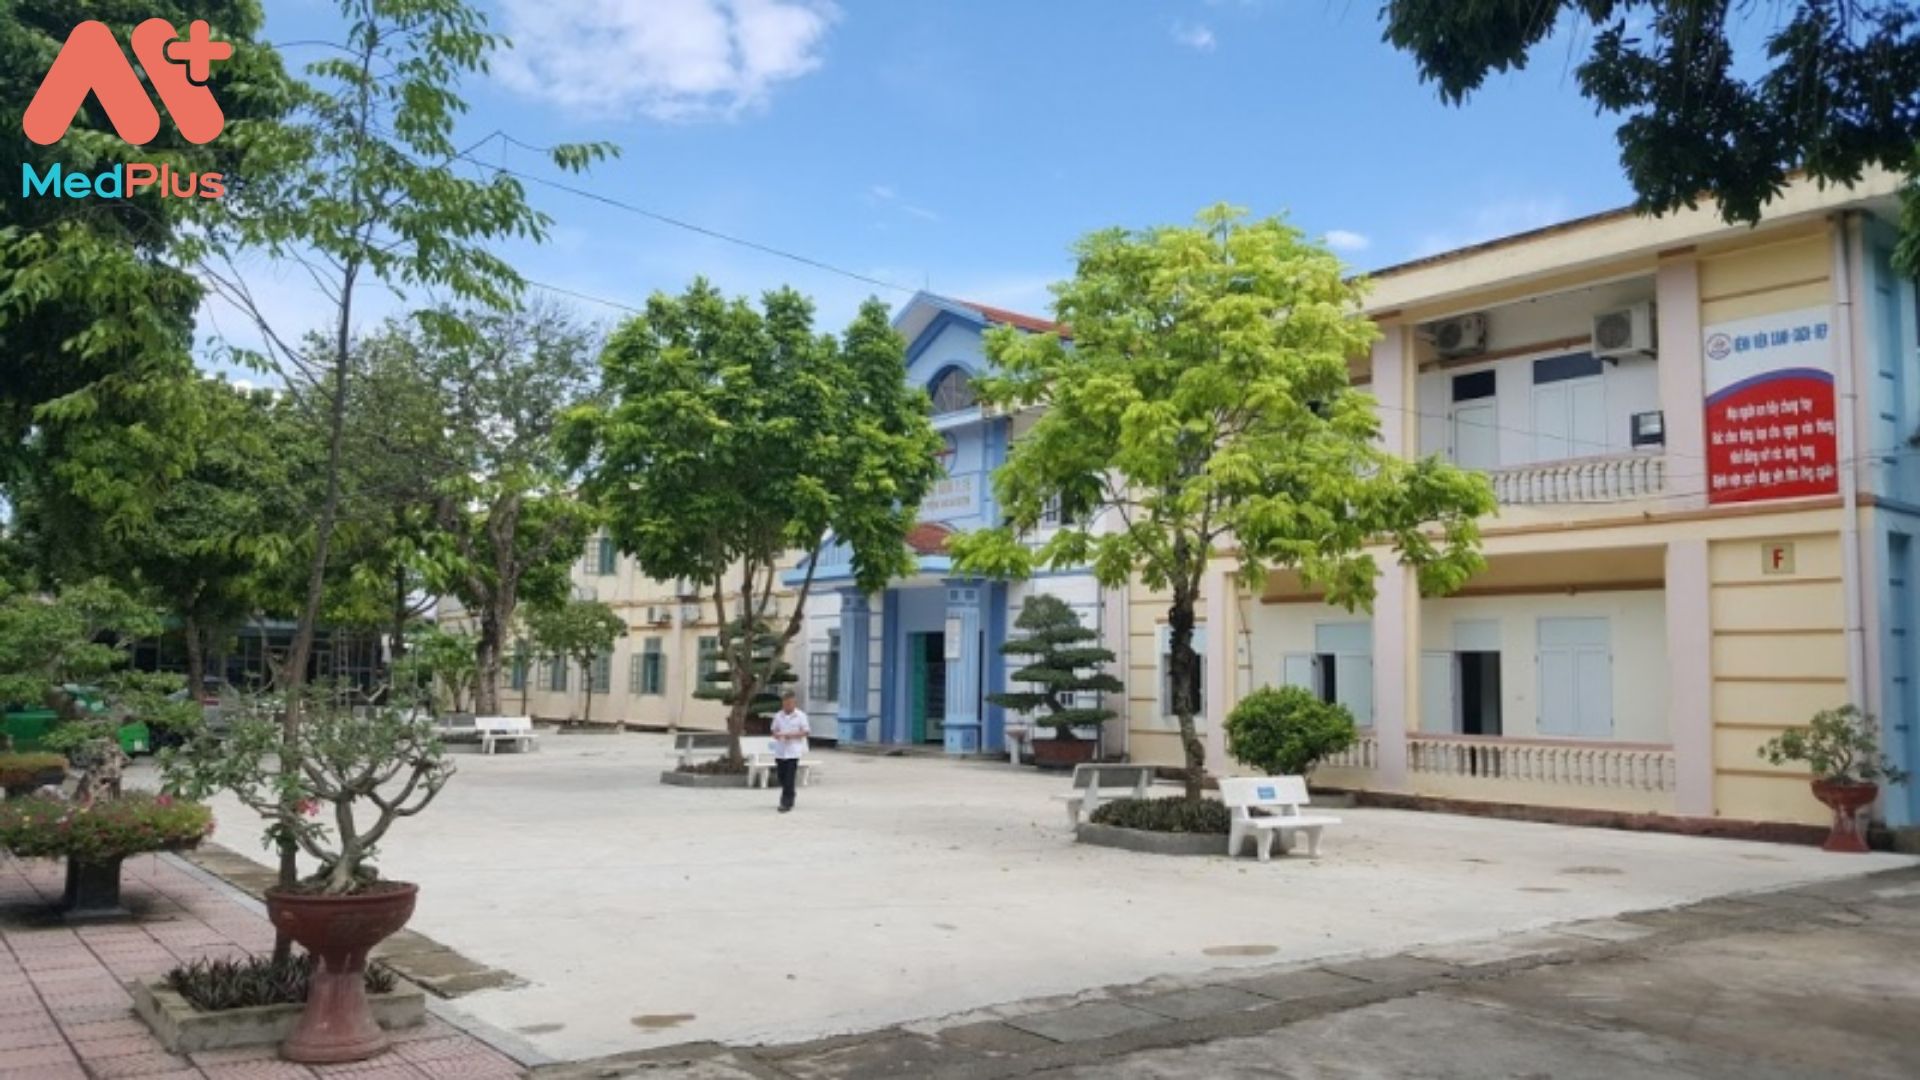 Bệnh viện đa khoa huyện Nga Sơn